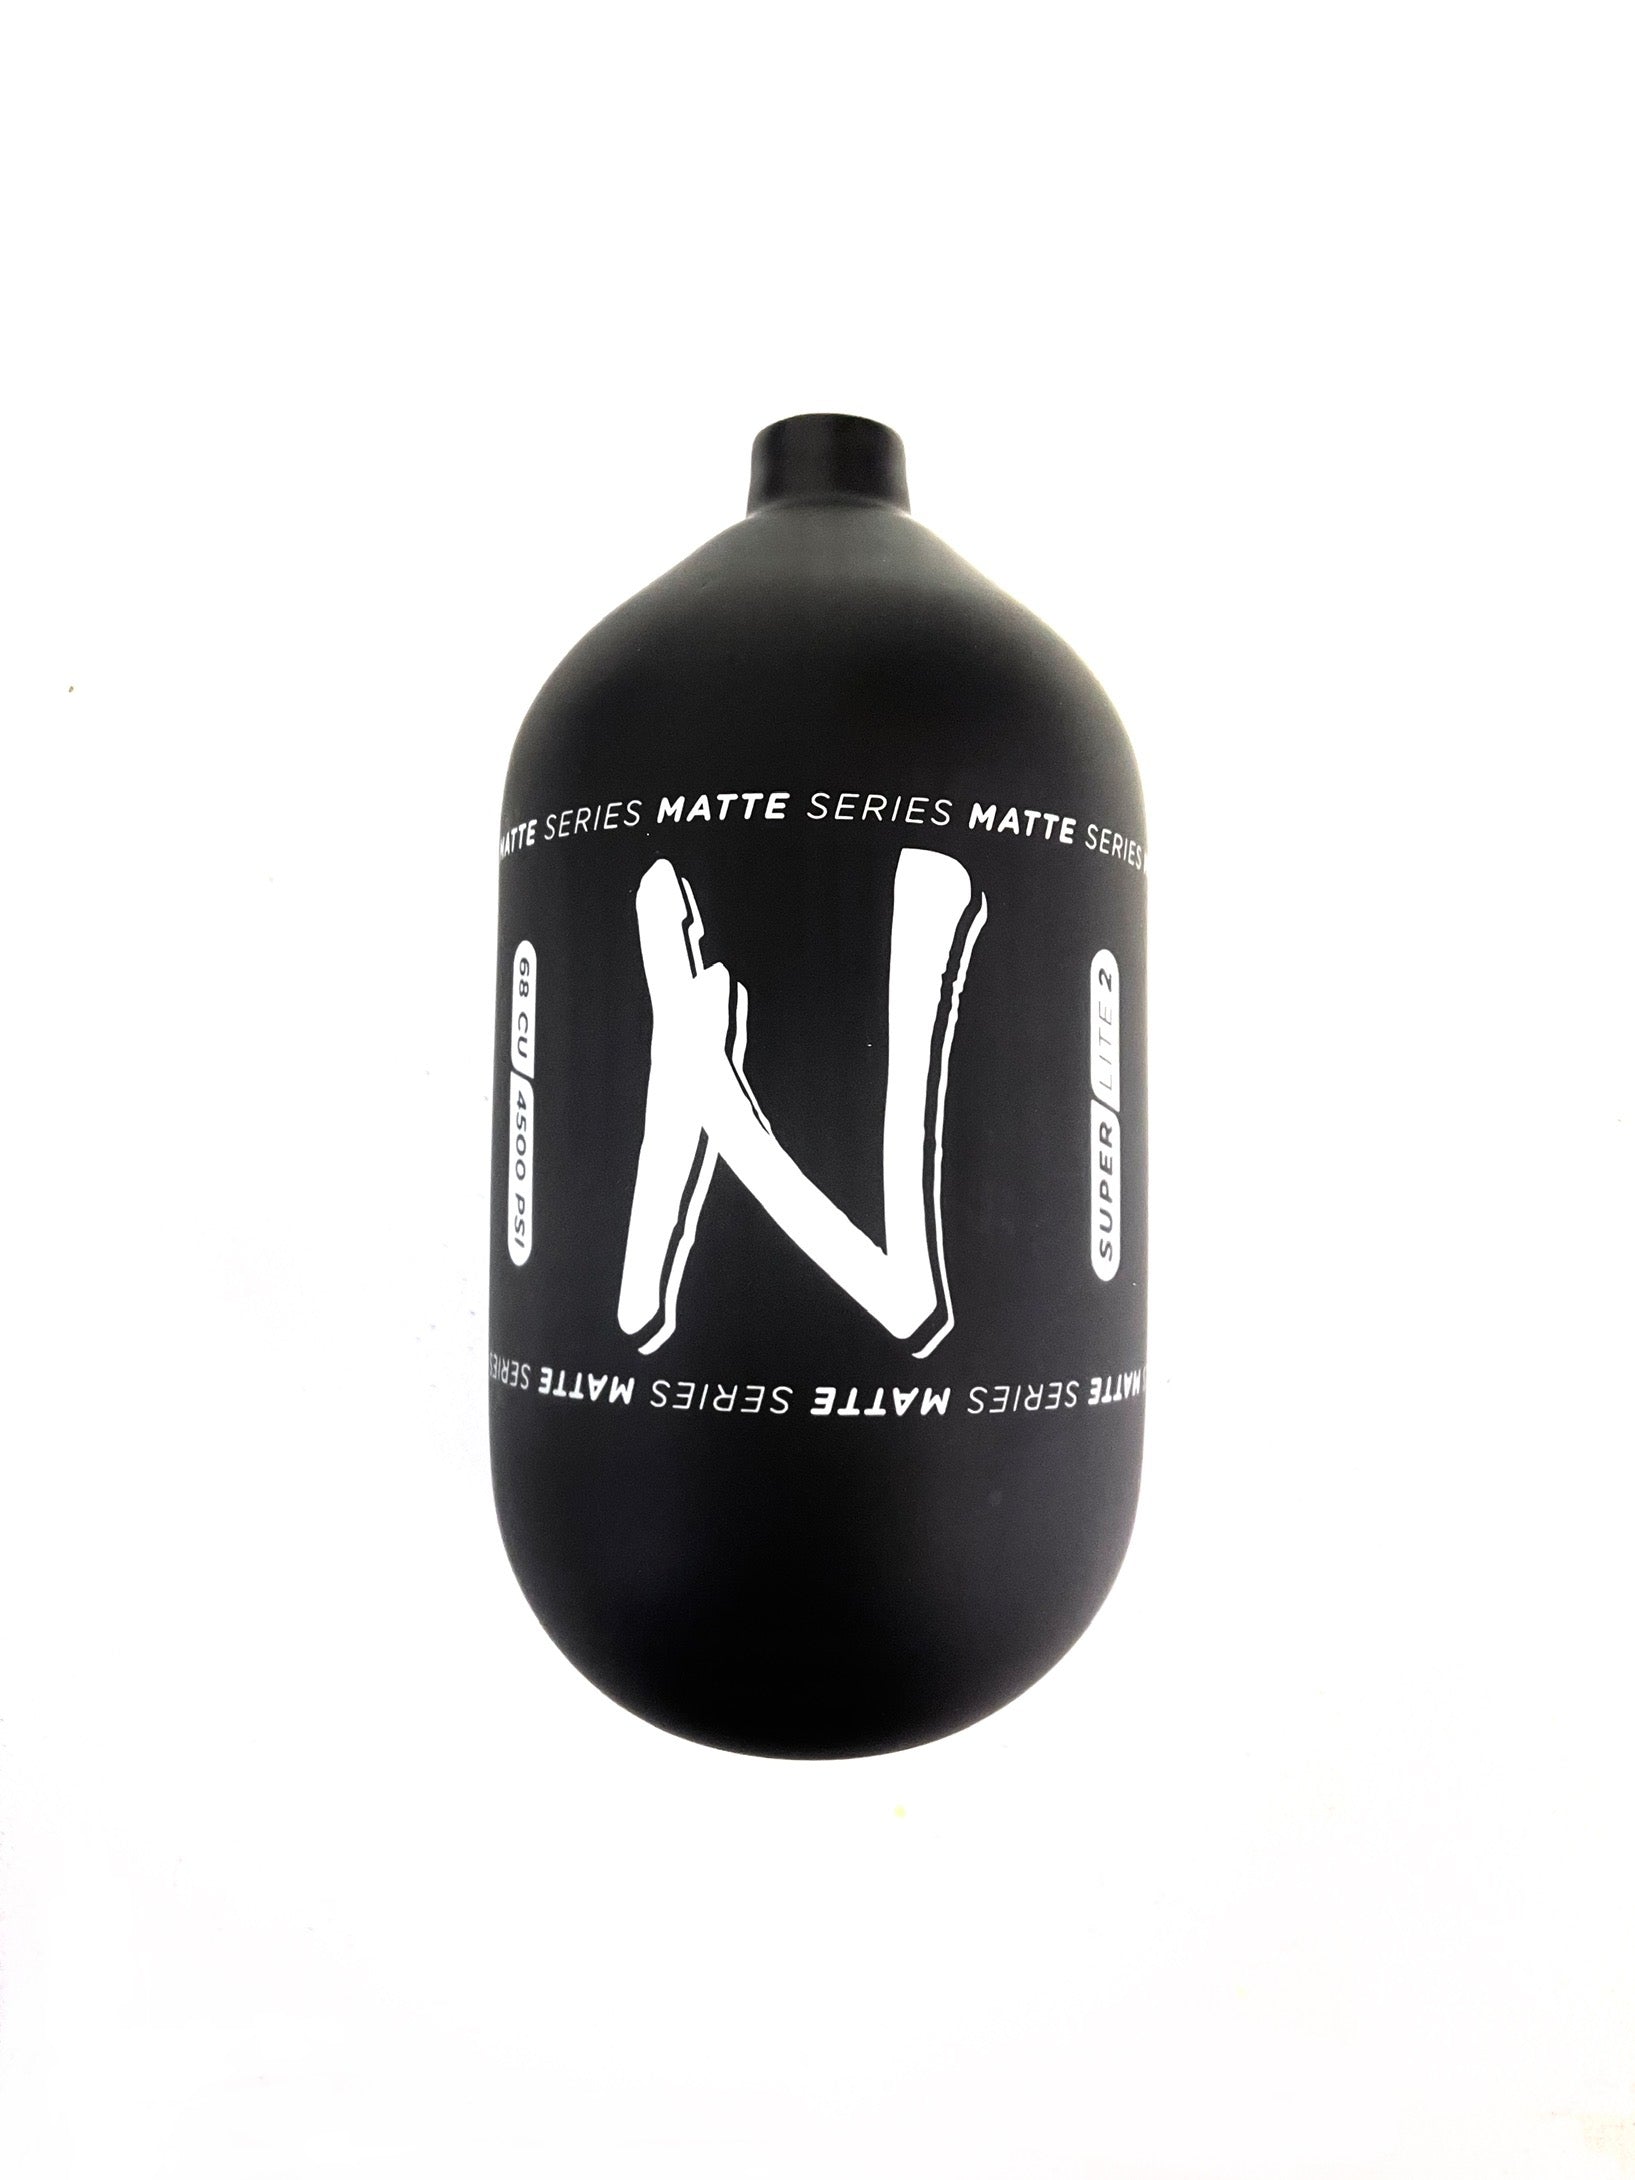 Ninja SL2 68/4500 "Matte Series" Carbon Fiber Paintball Tank BOTTLE ONLY - Black/White